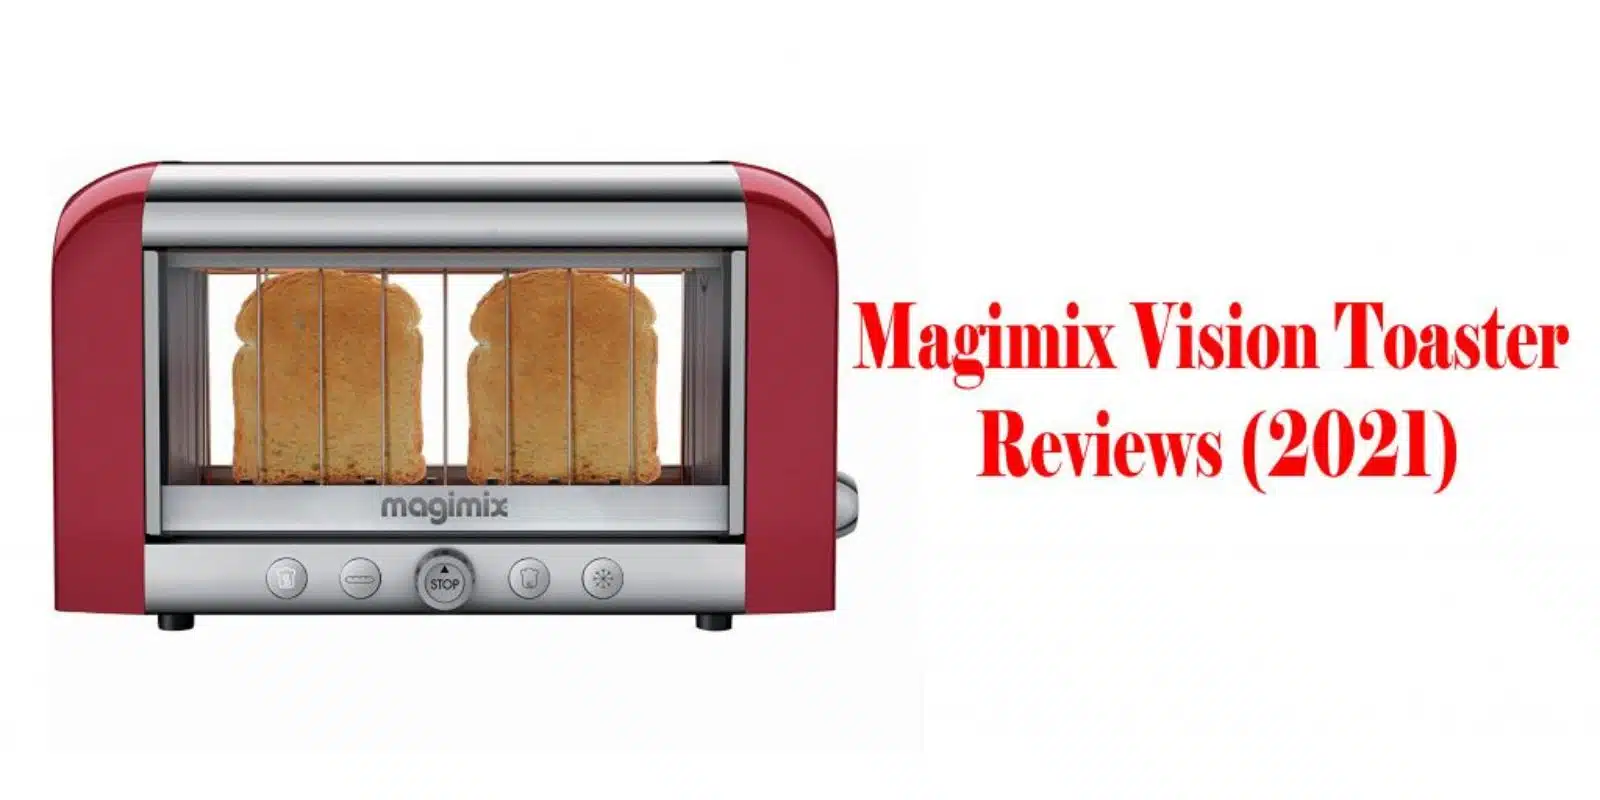 Magimix Vision Toaster Reviews – (2021)